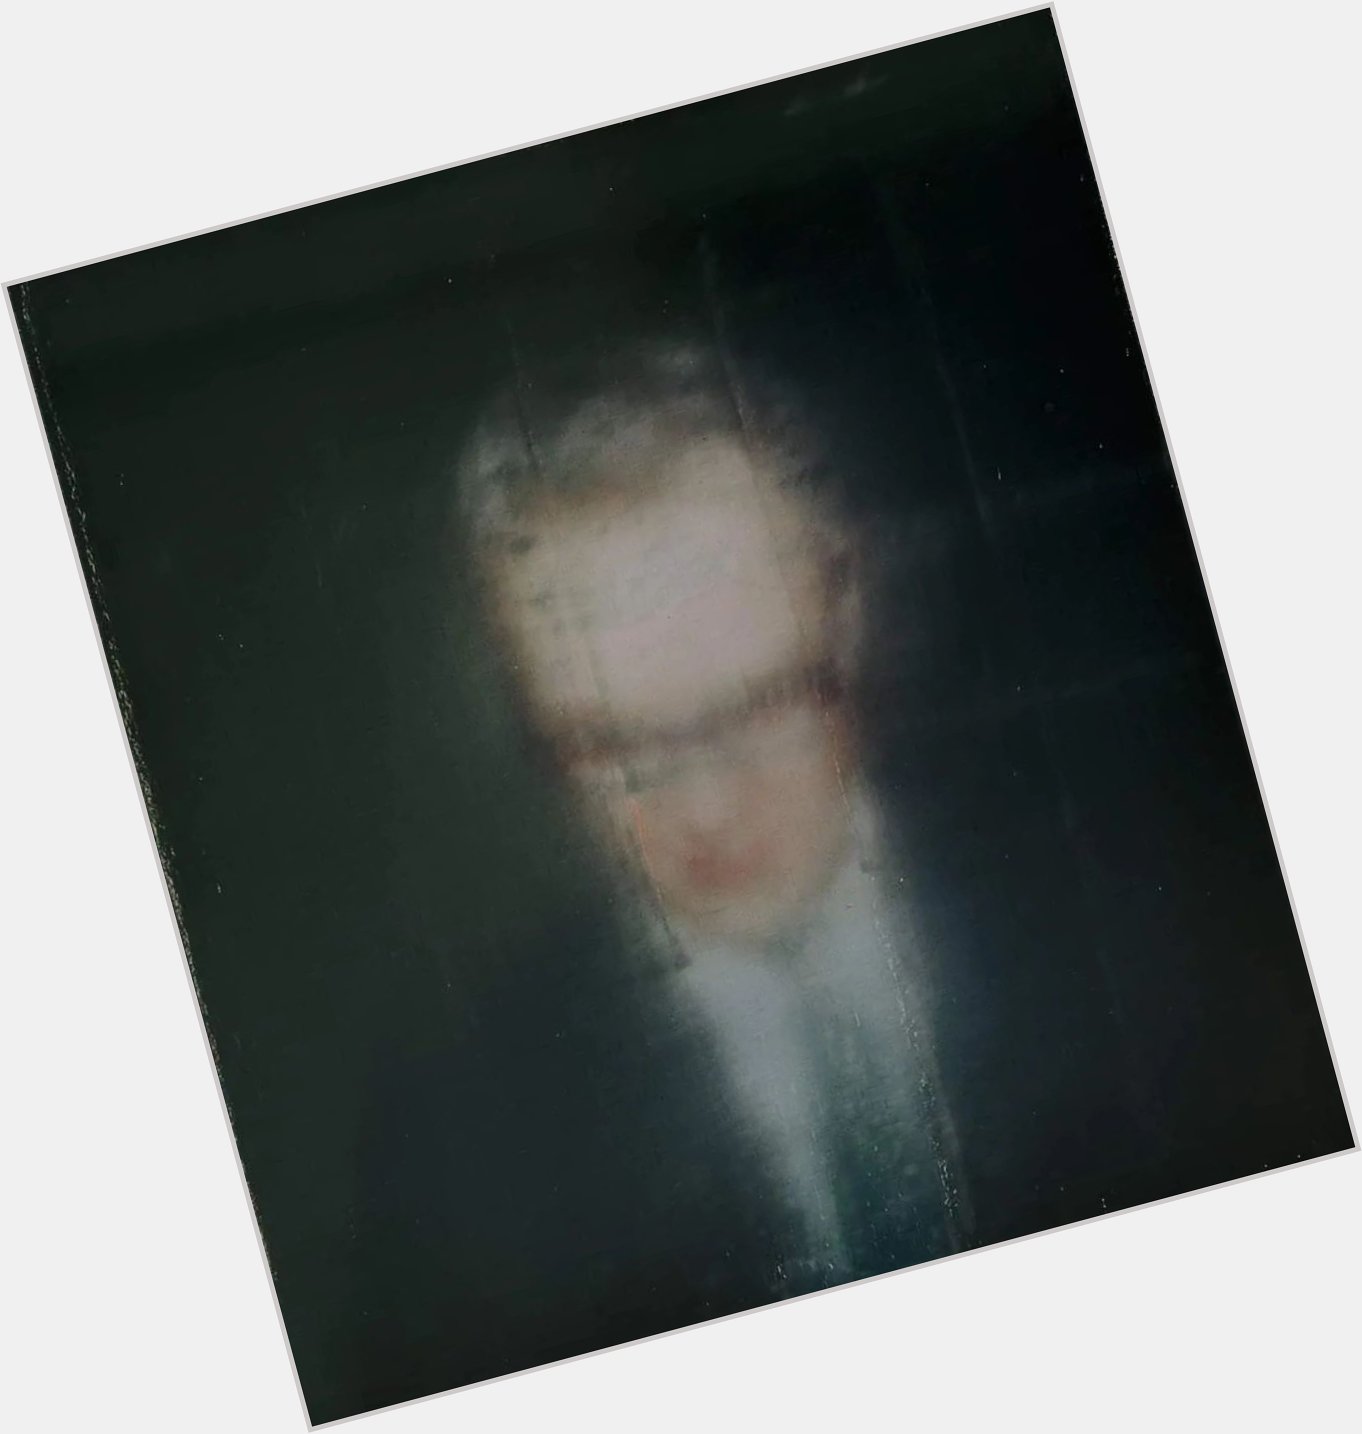 Happy 90th birthday to Gerhard Richter.

Self-portrait, 1996 